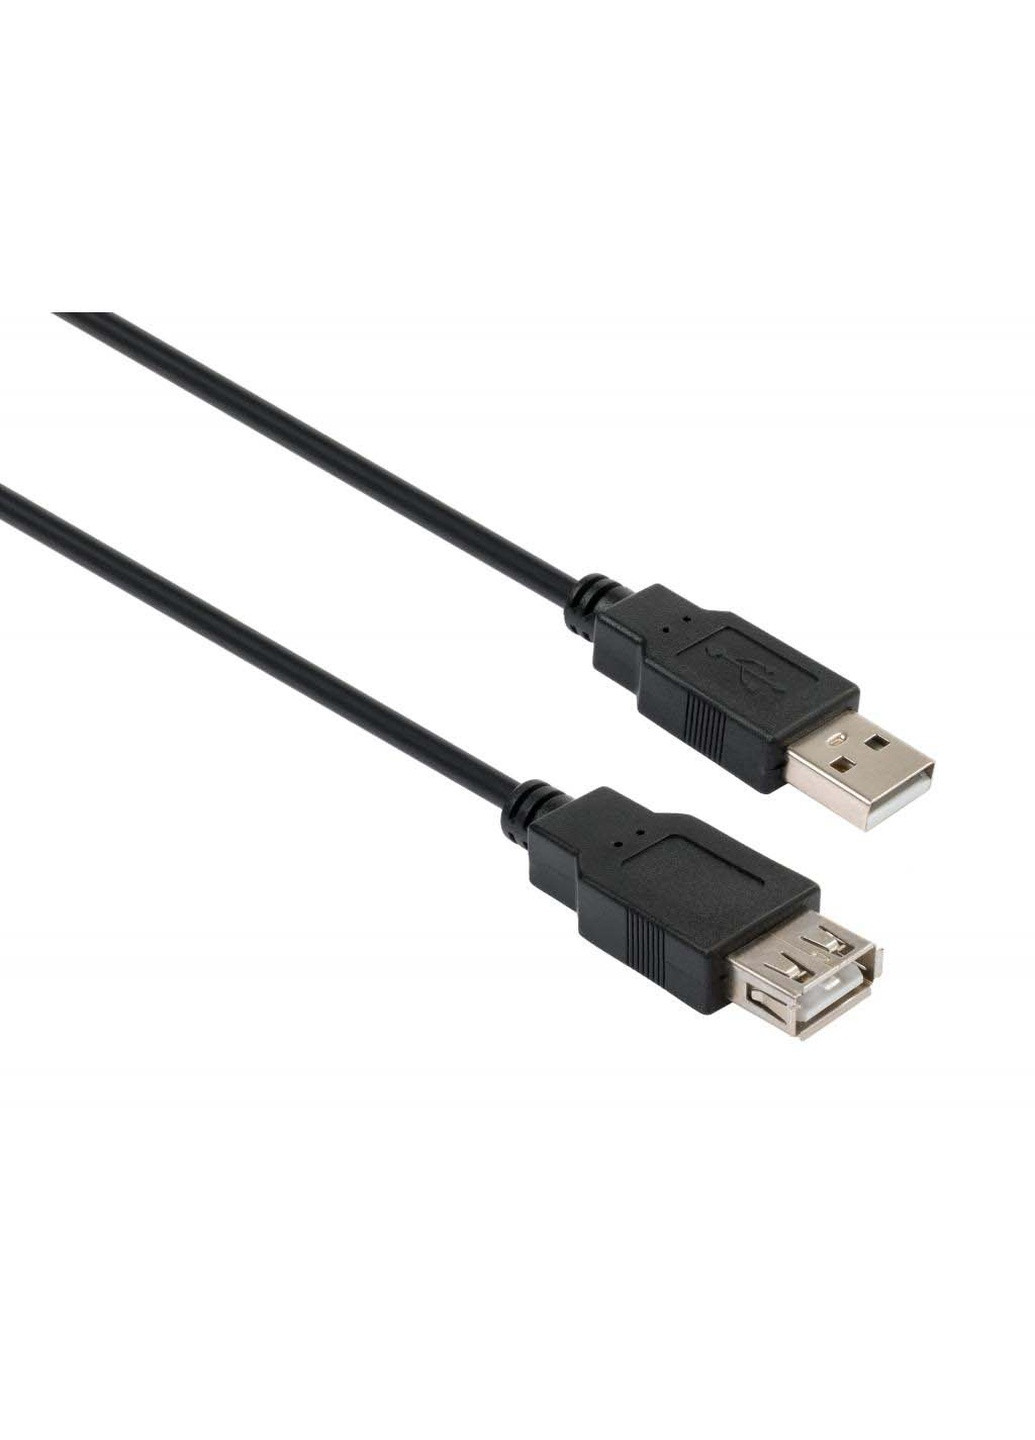 Дата кабель USB 2.0 AM / AF 1.8m (VCPUSBAMAF1.8BK) Vinga usb 2.0 am/af 1.8m (239381399)